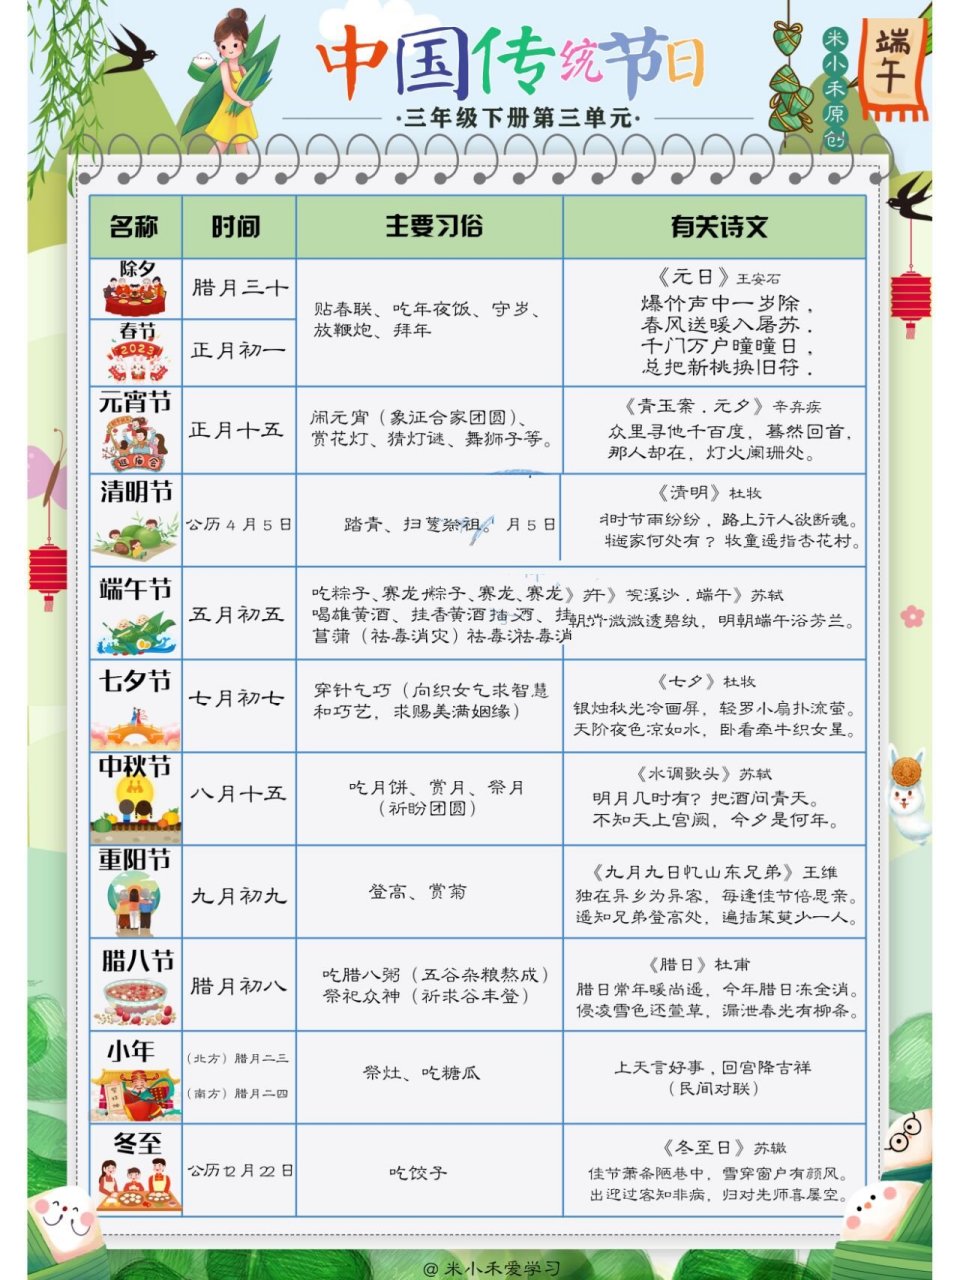 中国传统节日顺序表图片